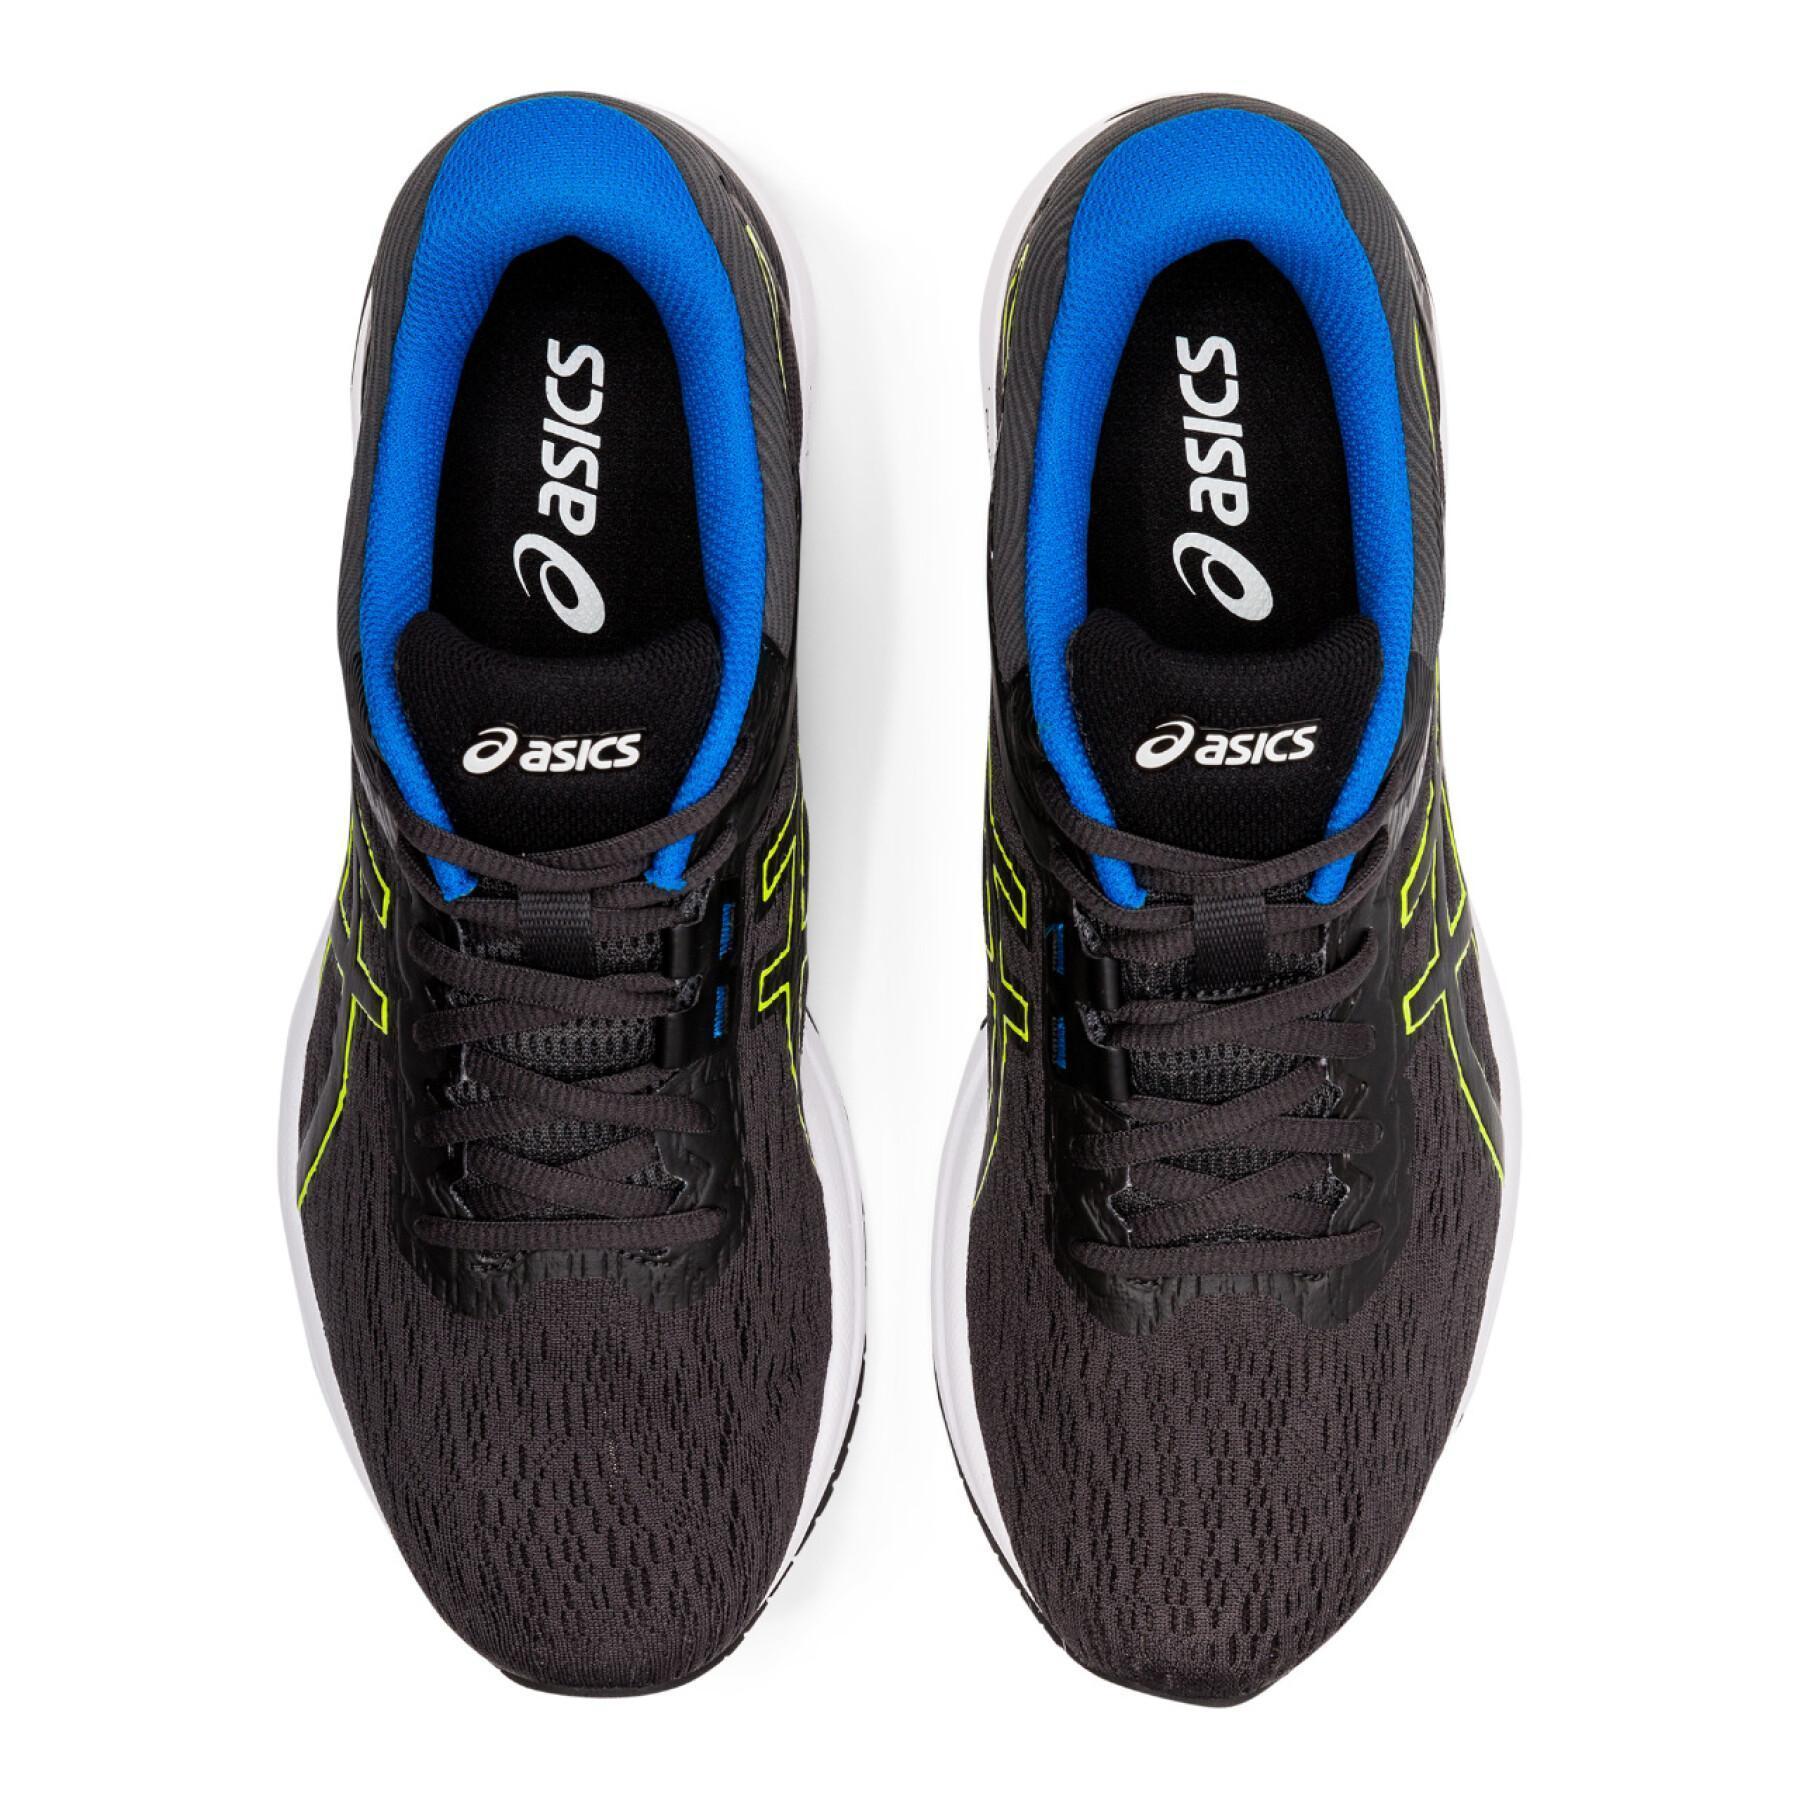 Chaussures de running Asics Gt-800